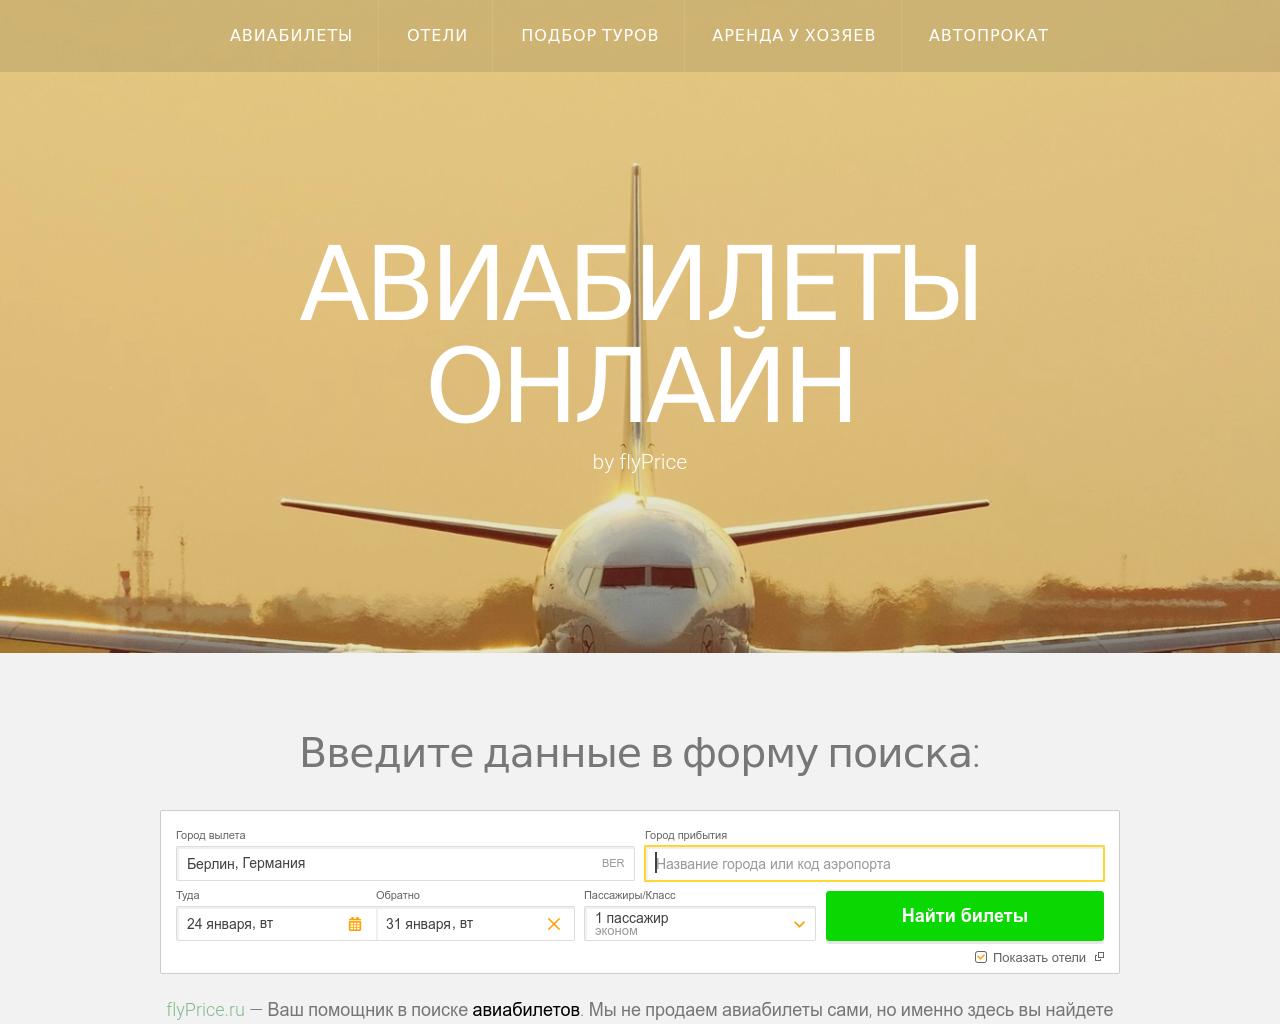 Изображение сайта flyprice.ru в разрешении 1280x1024